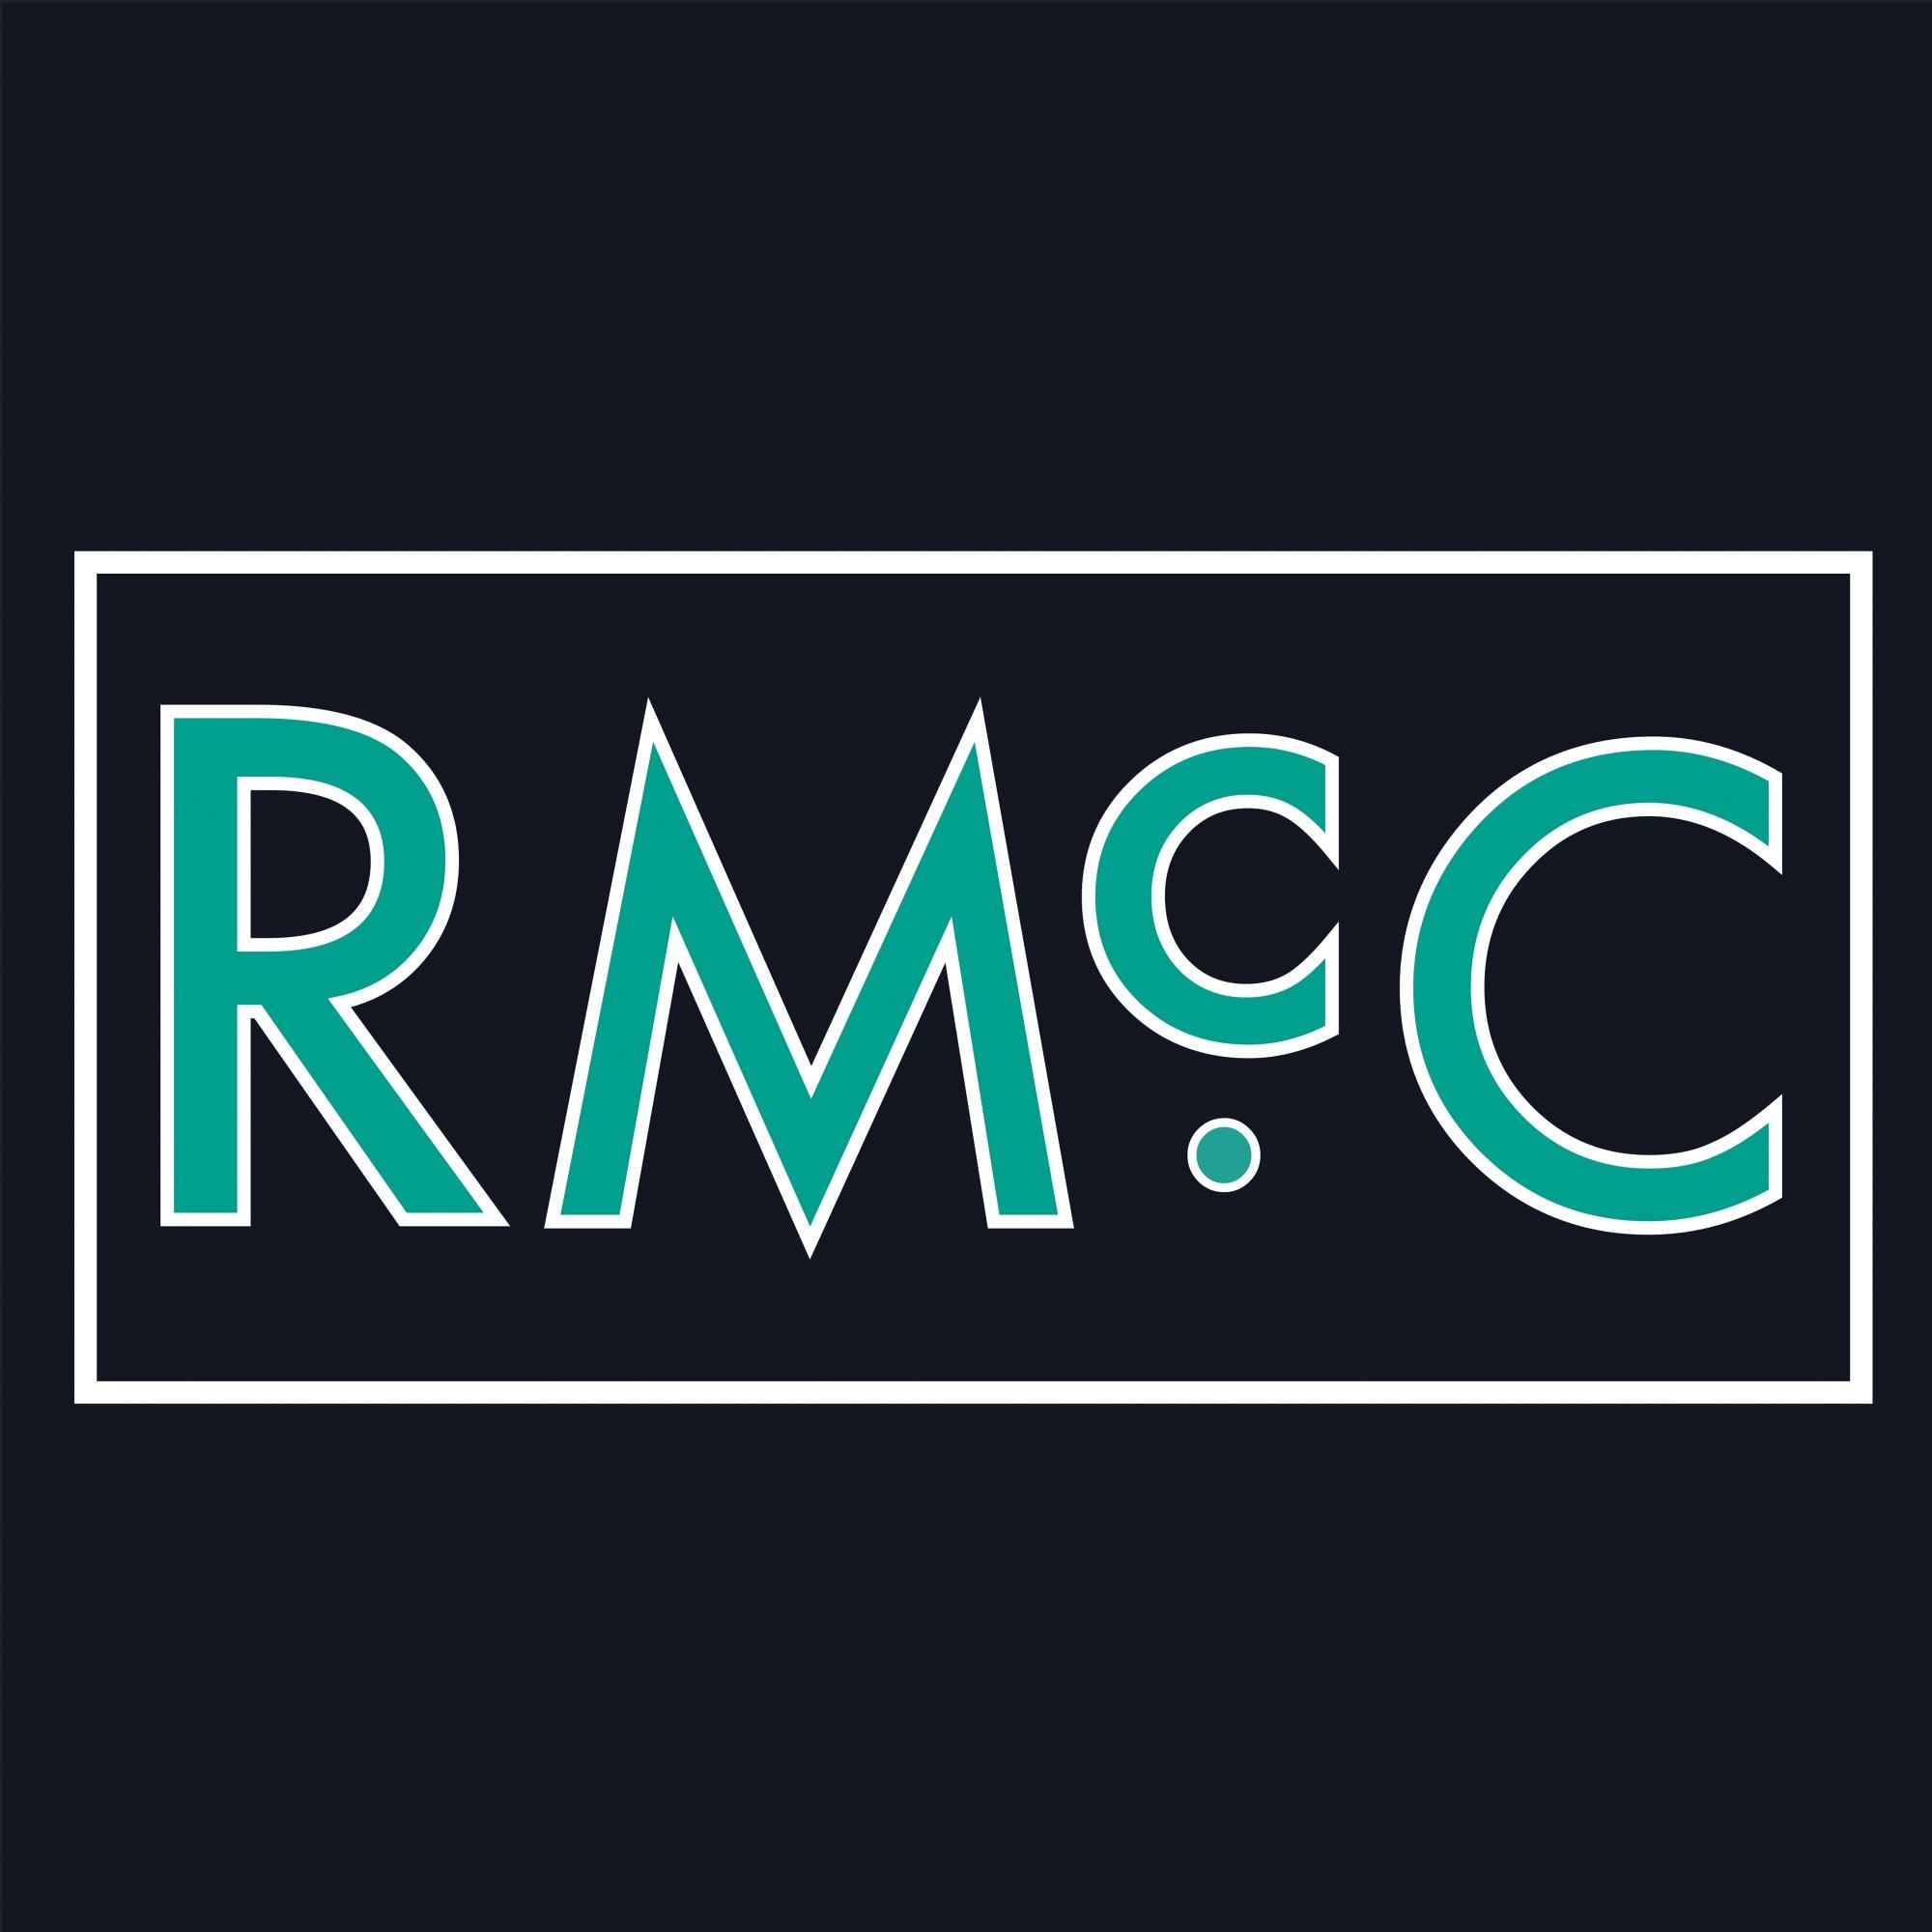 RMcC Design - Ruairí // Designer - Instagram • rmccdesign - Pinterest • rmccdesign - Tumblr • rmccdesign